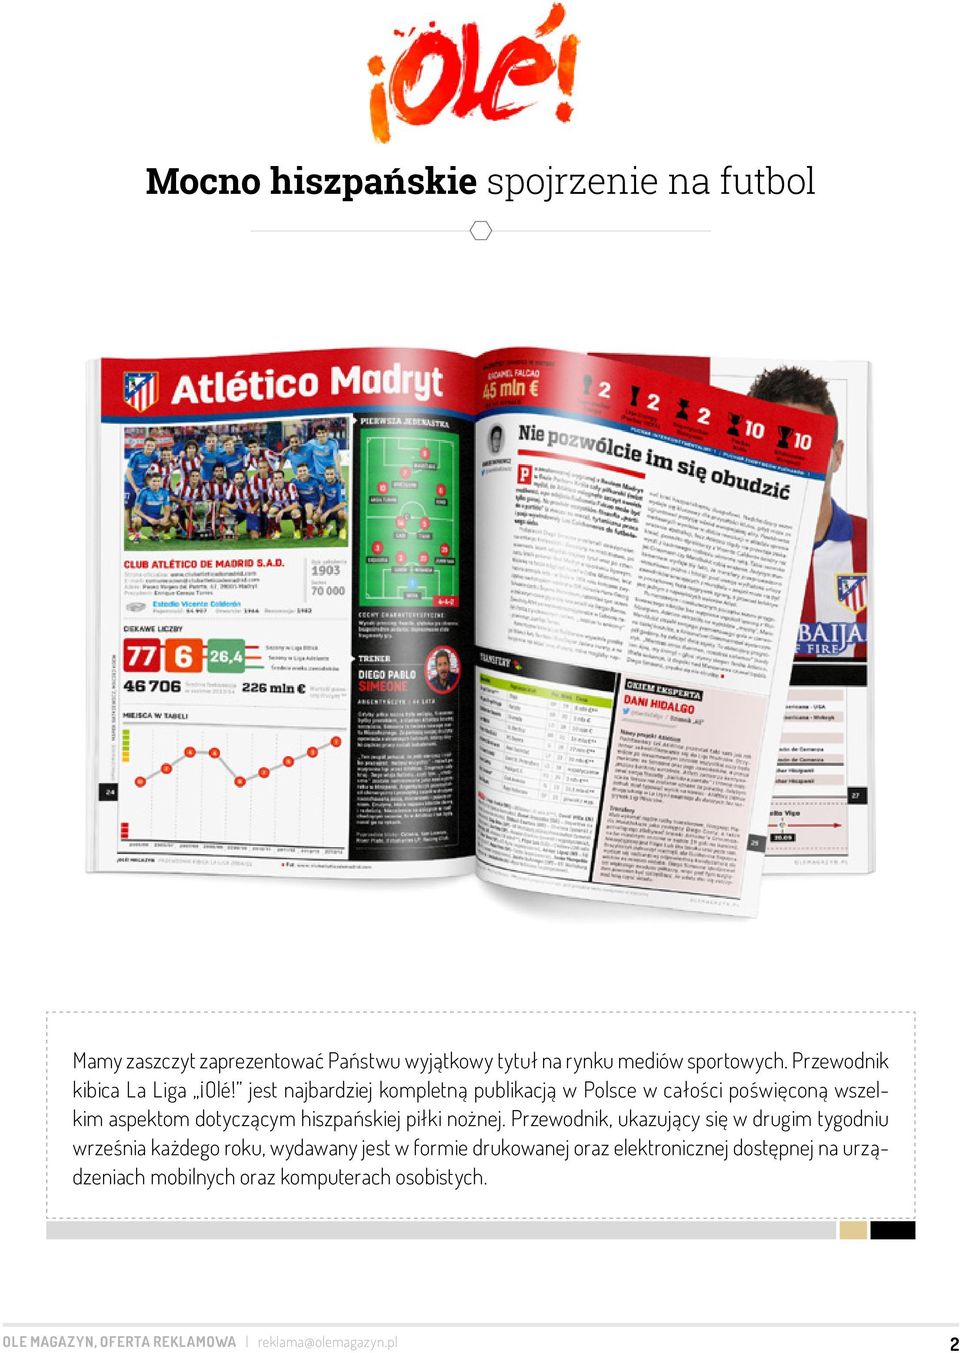 jest najbardziej kompletną publikacją w Polsce w całości poświęconą wszelkim aspektom dotyczącym hiszpańskiej piłki nożnej.